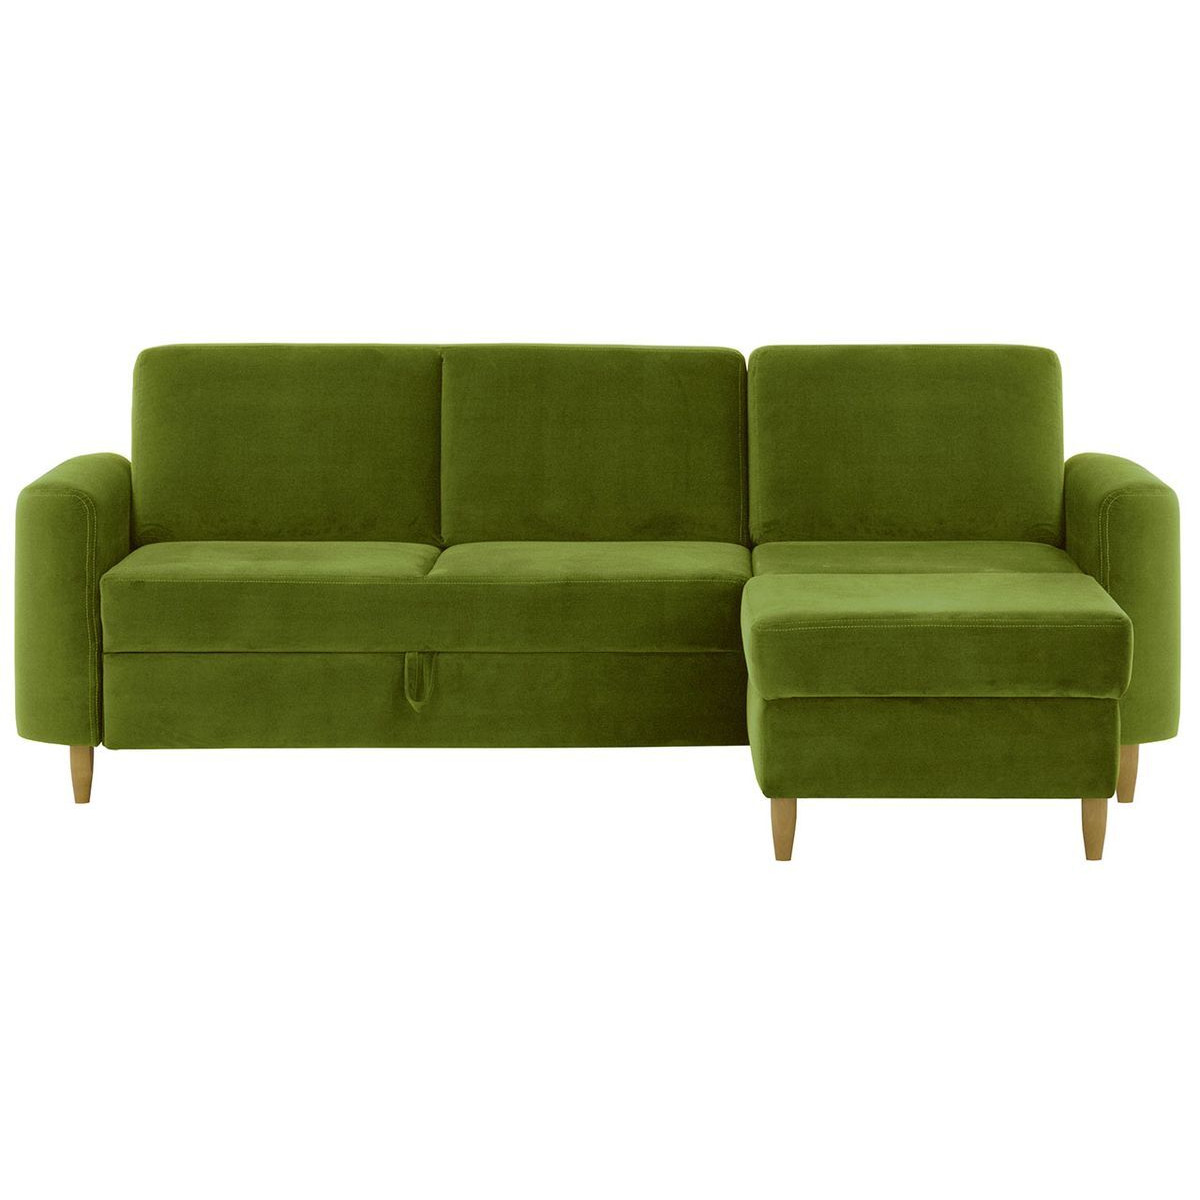 Elegance Corner Sofa Bed With Storage, V 33 - Rust - image 1